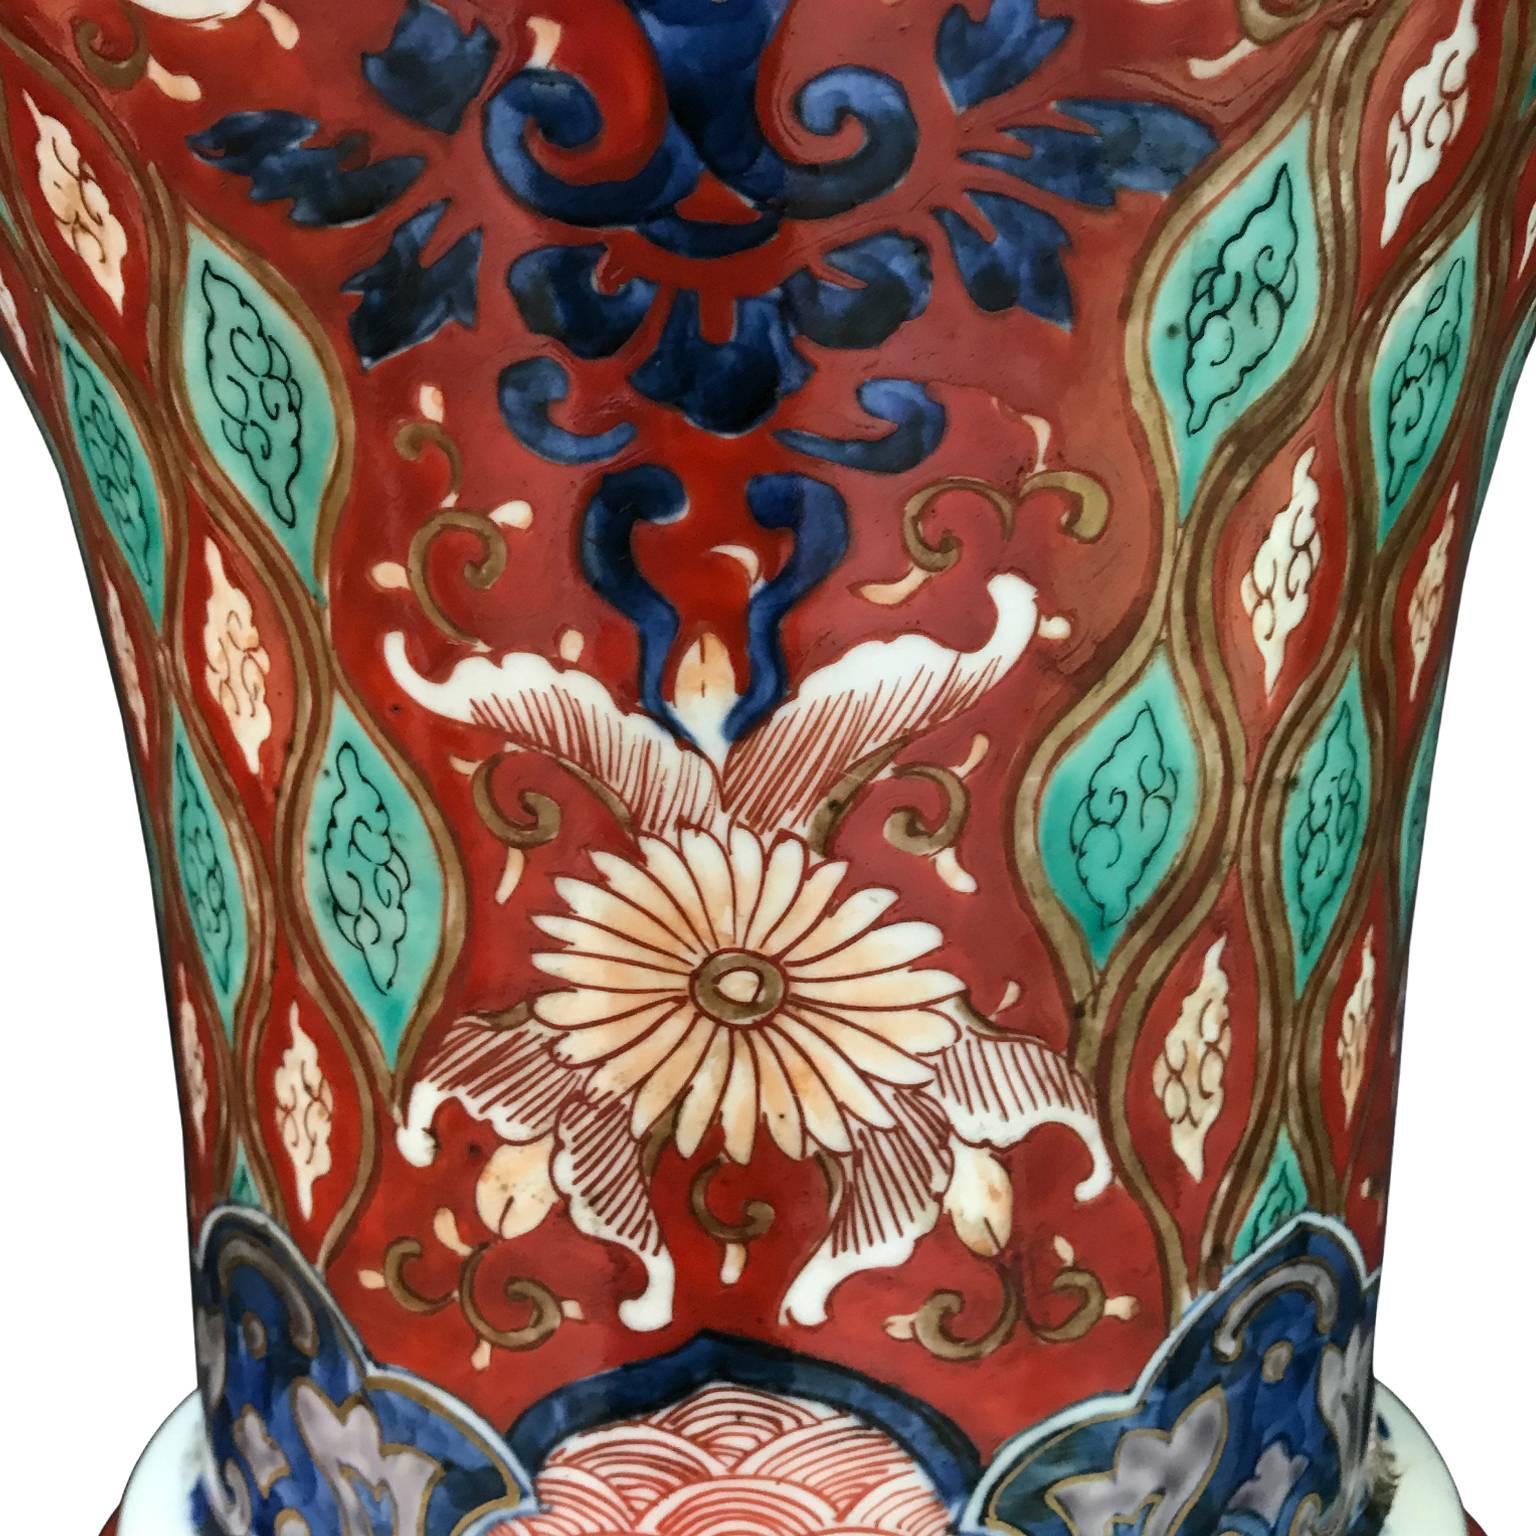 Pair of Large Imari Vases 19th Century Japanese Blue Red White Porcelain Vases 8